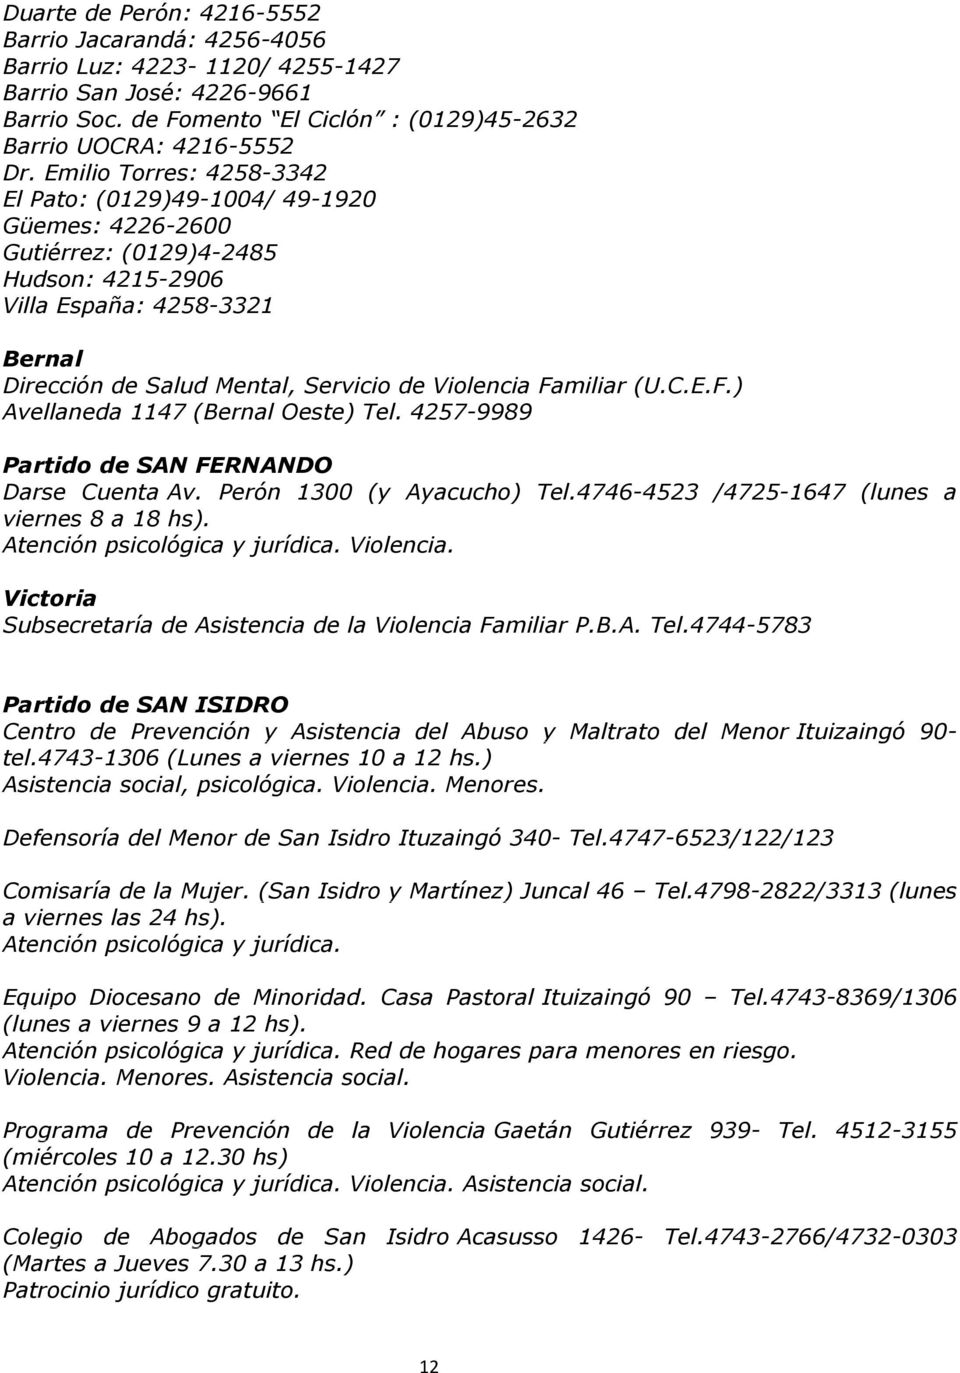 Familiar (U.C.E.F.) Avellaneda 1147 (Bernal Oeste) Tel. 4257-9989 Partido de SAN FERNANDO Darse Cuenta Av. Perón 1300 (y Ayacucho) Tel.4746-4523 /4725-1647 (lunes a viernes 8 a 18 hs).